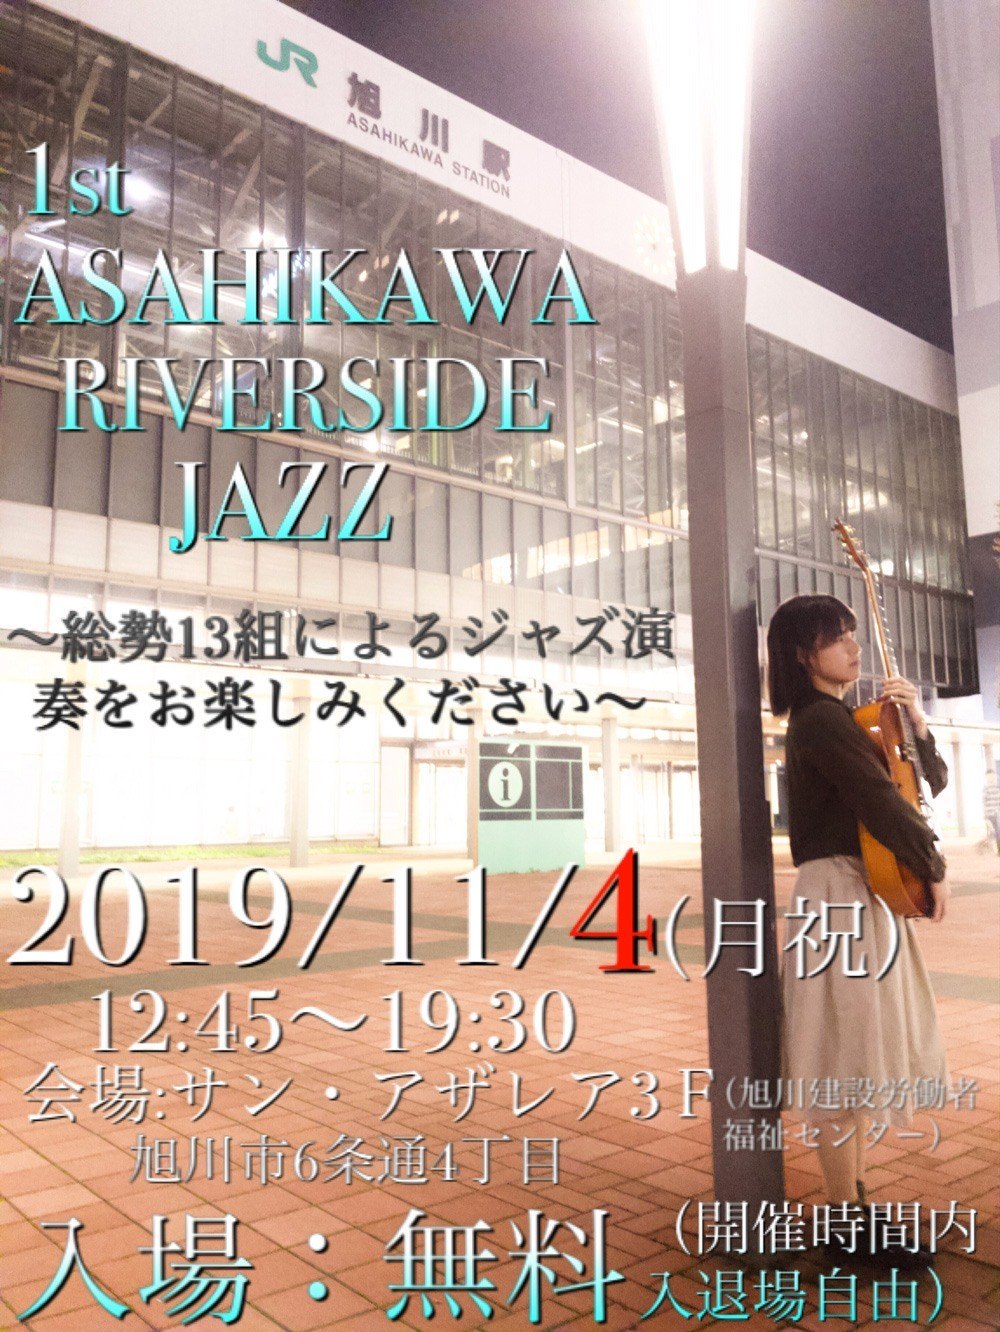 1st Asahikawa Riverside Jazz 旭川市6条通 イベント ライナーウェブ